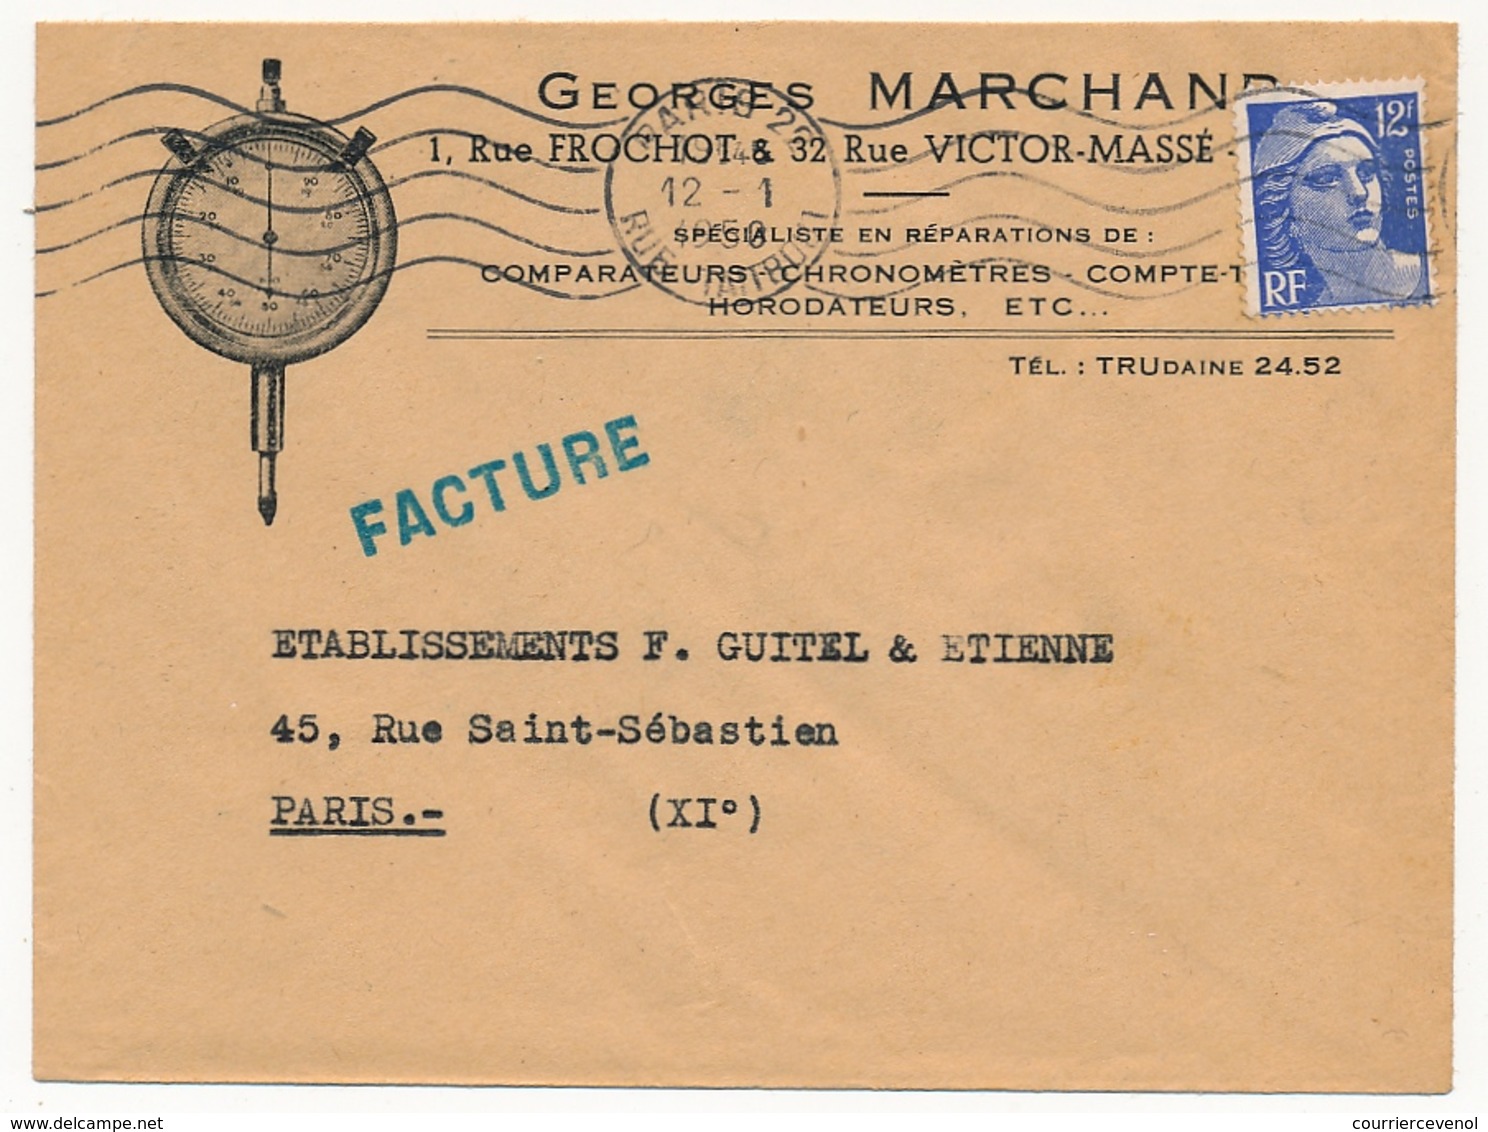 FRANCE - Enveloppe Publicitaire En-Tête Georges Marchand, Réparations Chronomètres, Horodateurs - Paris 1956 - 1950 - ...